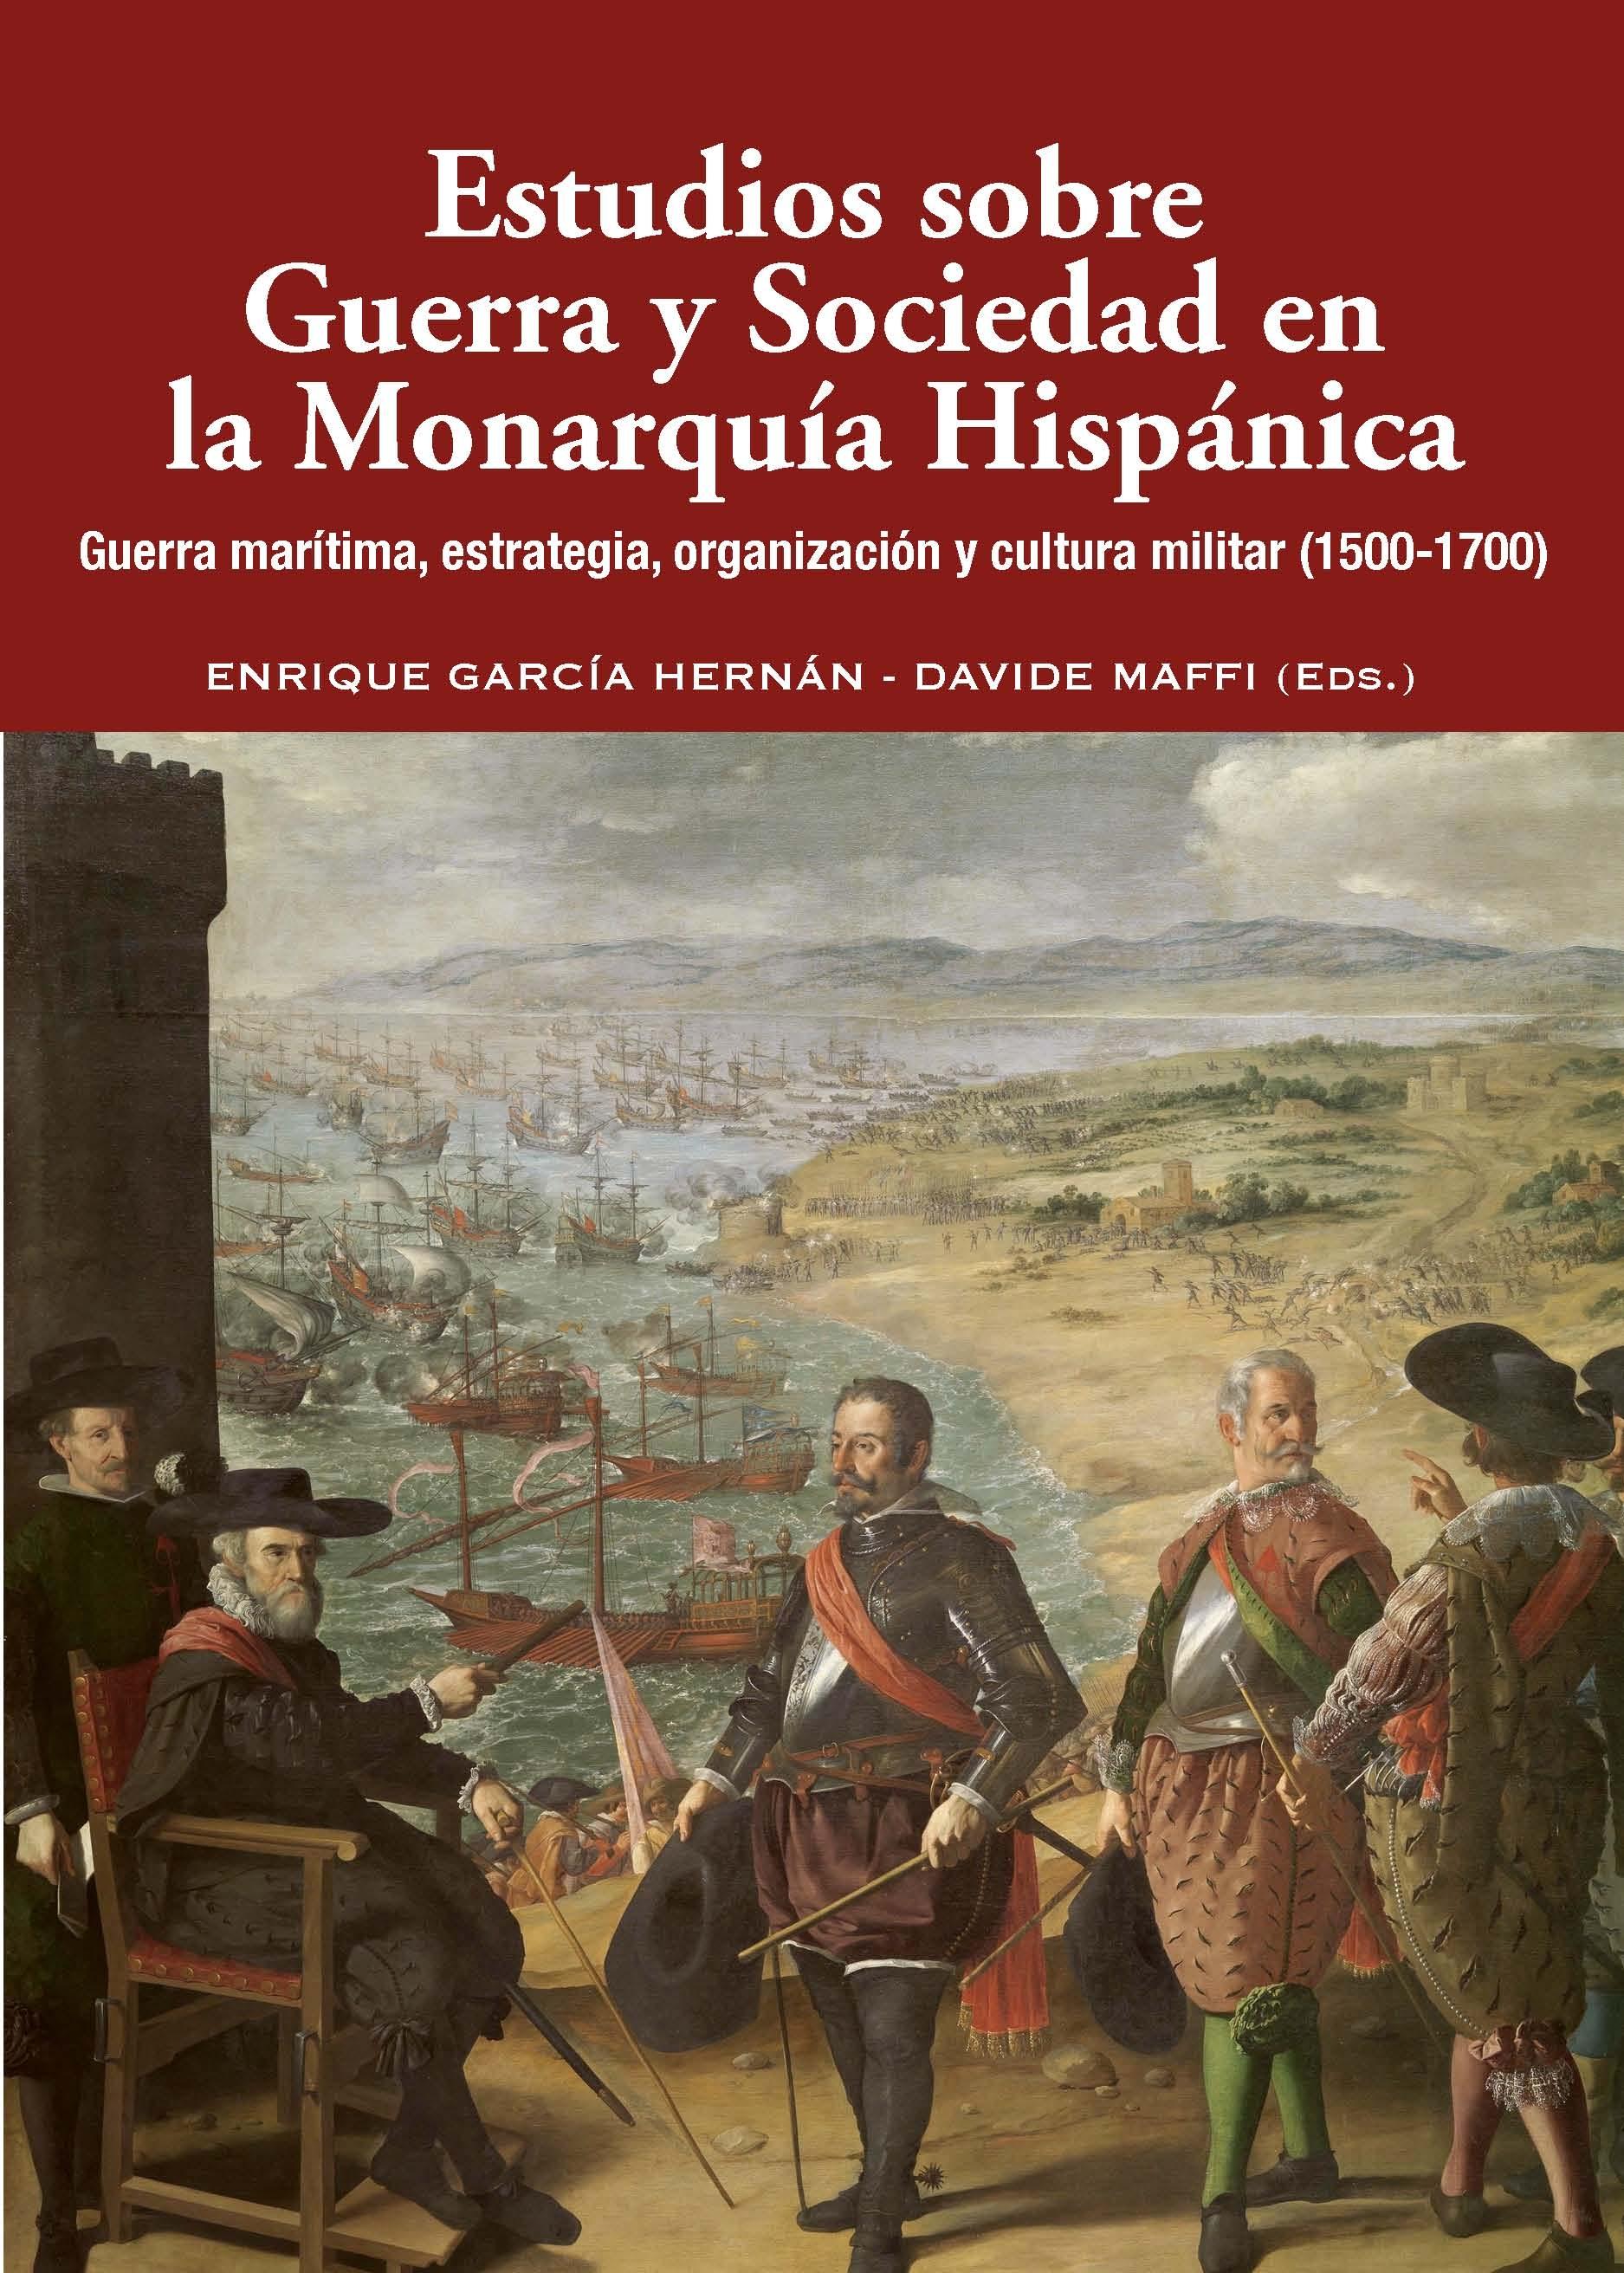 Estudios sobre Guerra y Sociedad en la Monarquía Hispánica "Guerra marítima, estrategia, organización y cultura militar (1500-1700)"